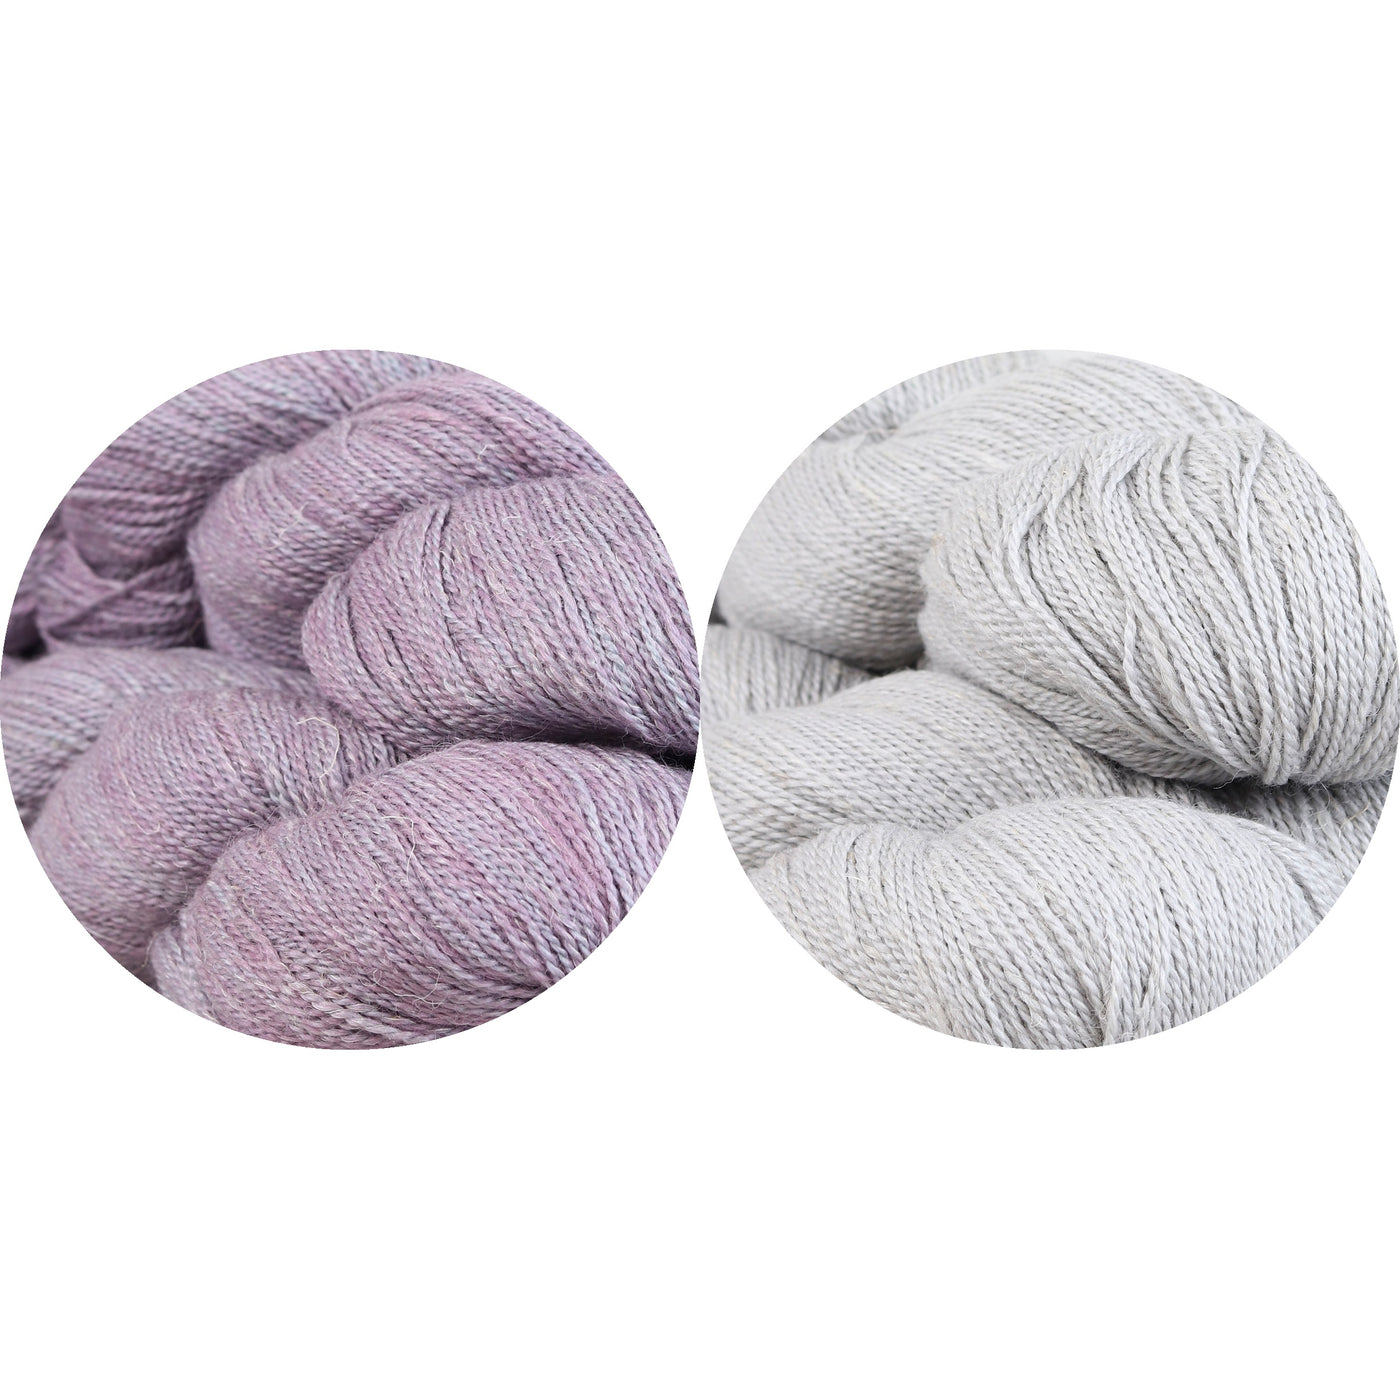 Lobelia Kit (Lavender/Bedstraw)